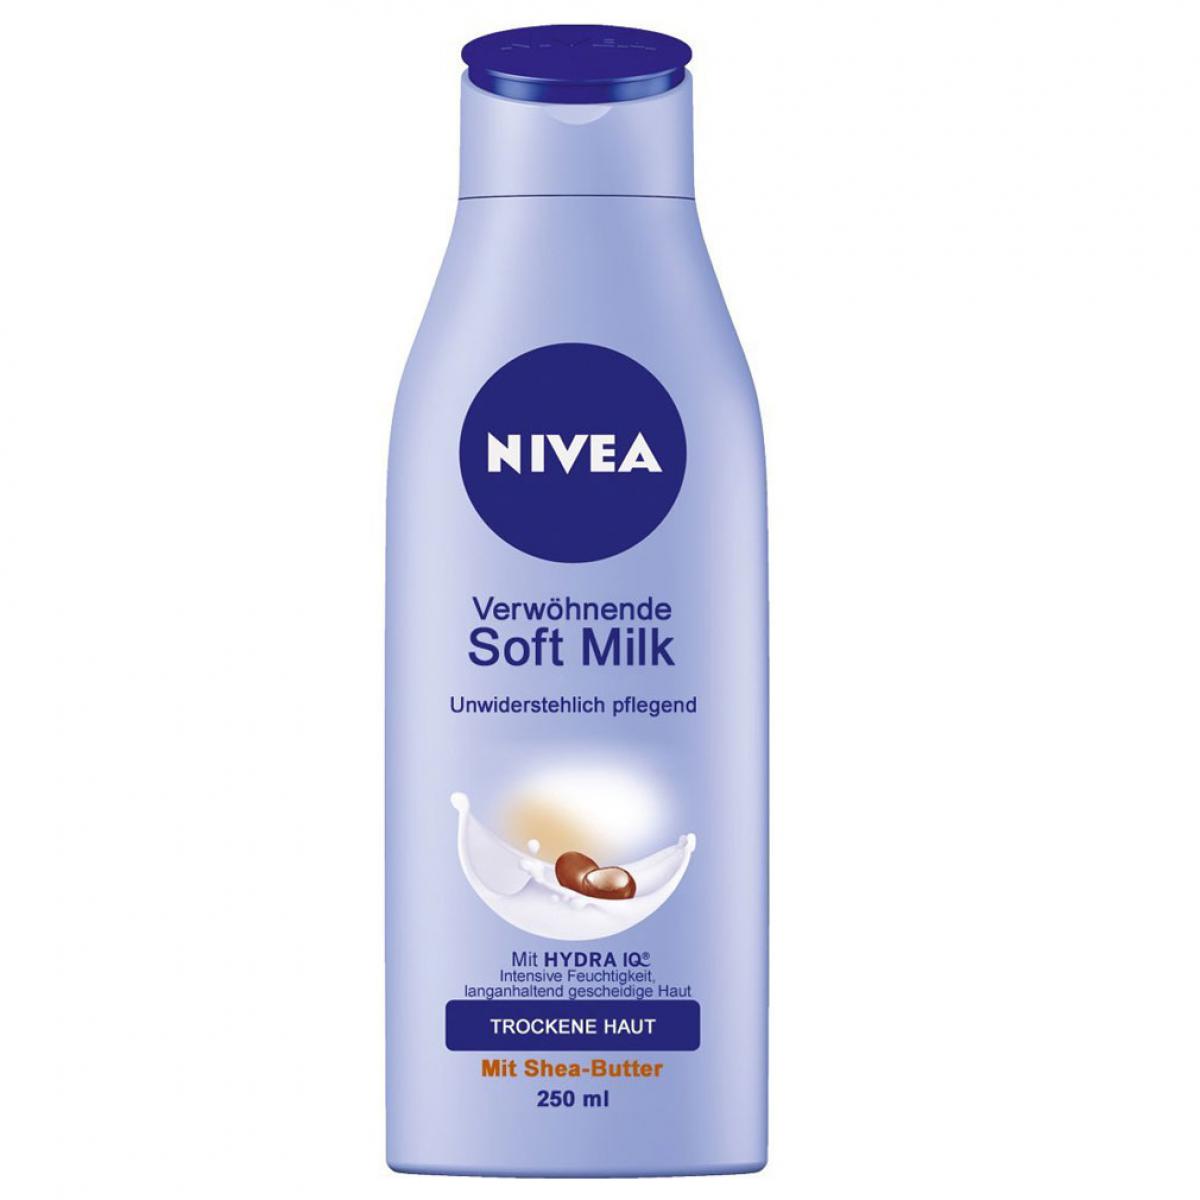 لوسیون بدن مناسب پوست خشک و حساس - Nivea Body Soft Milk Lotion